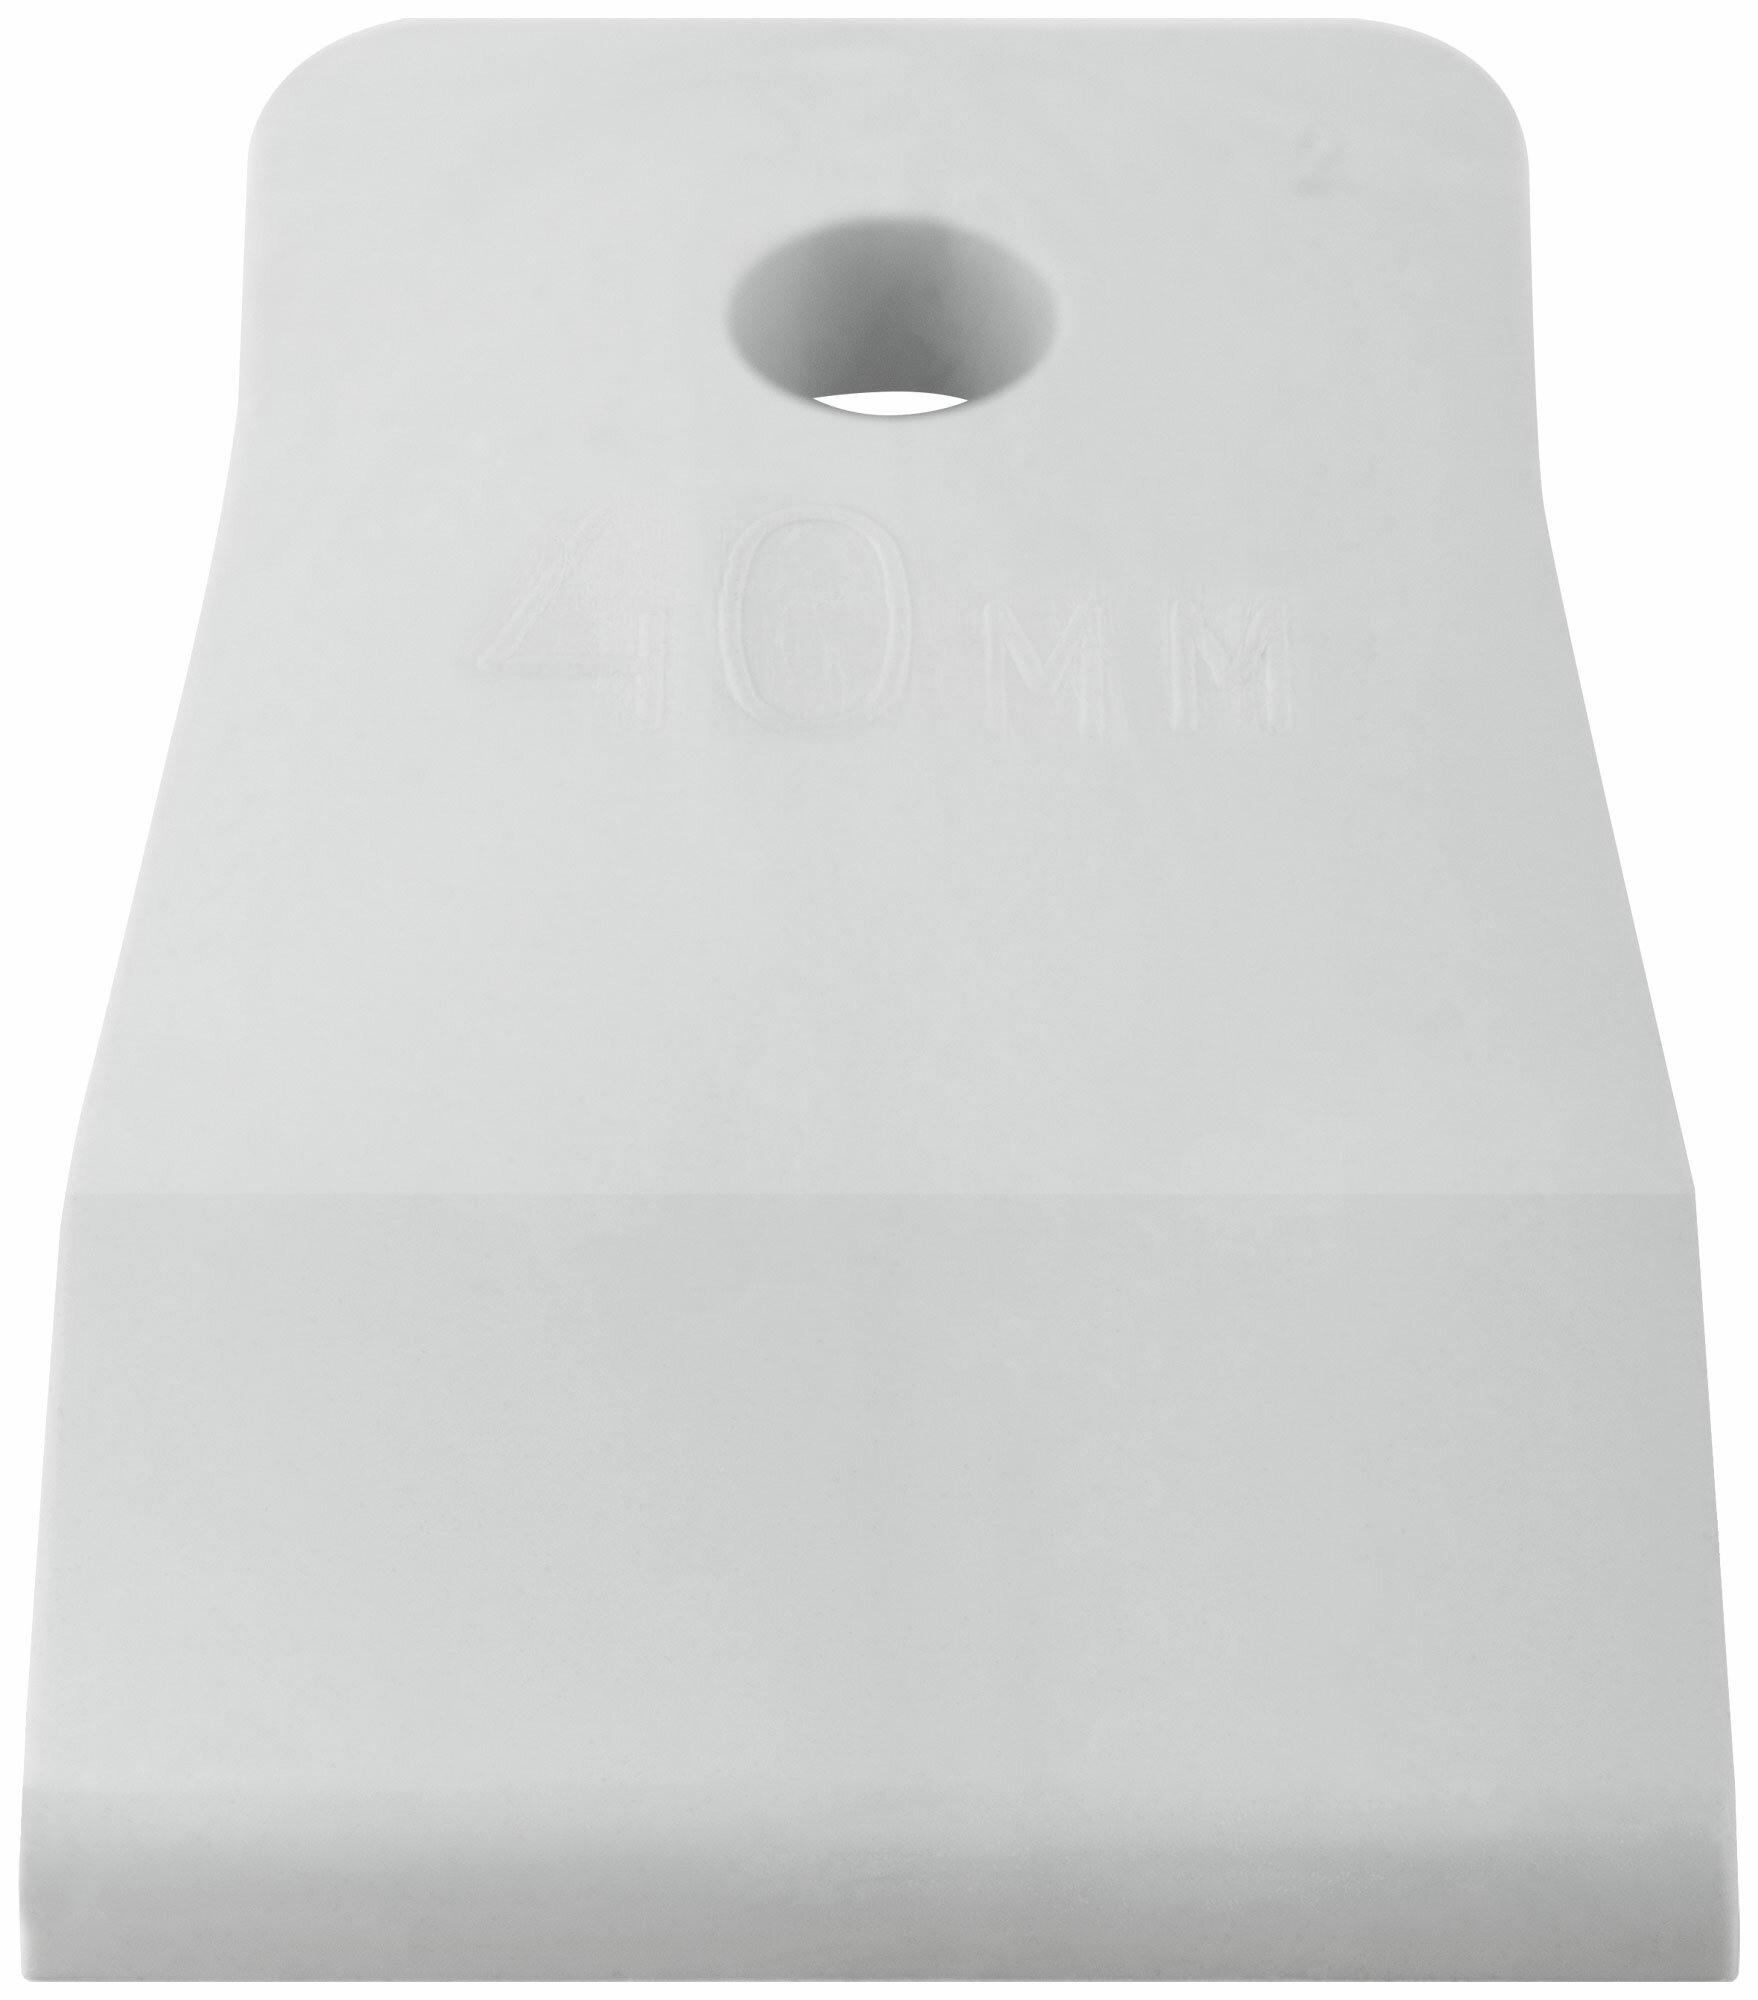 Шпатель резиновый белый 40 мм